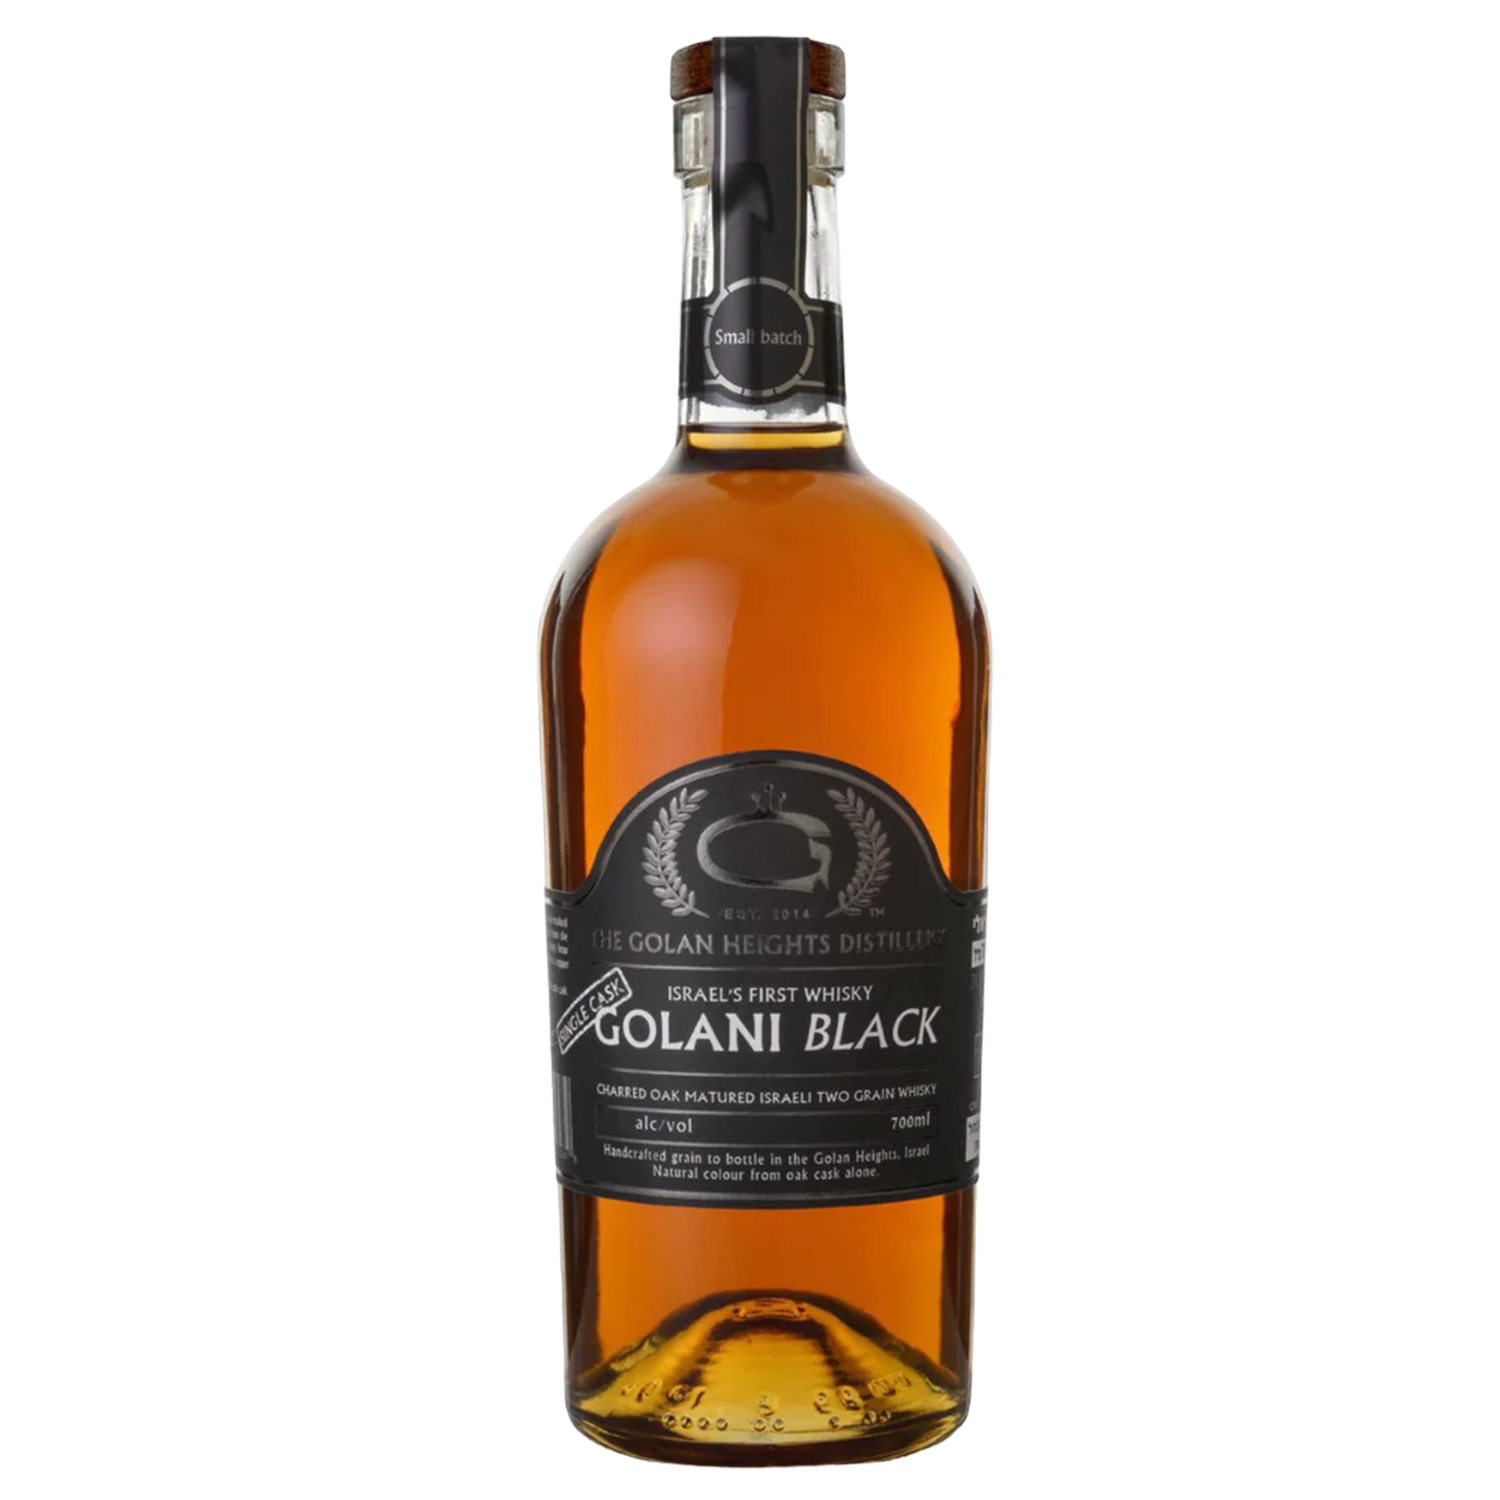 Golani Black Single Grain Whisky Cask Strength 700 ml